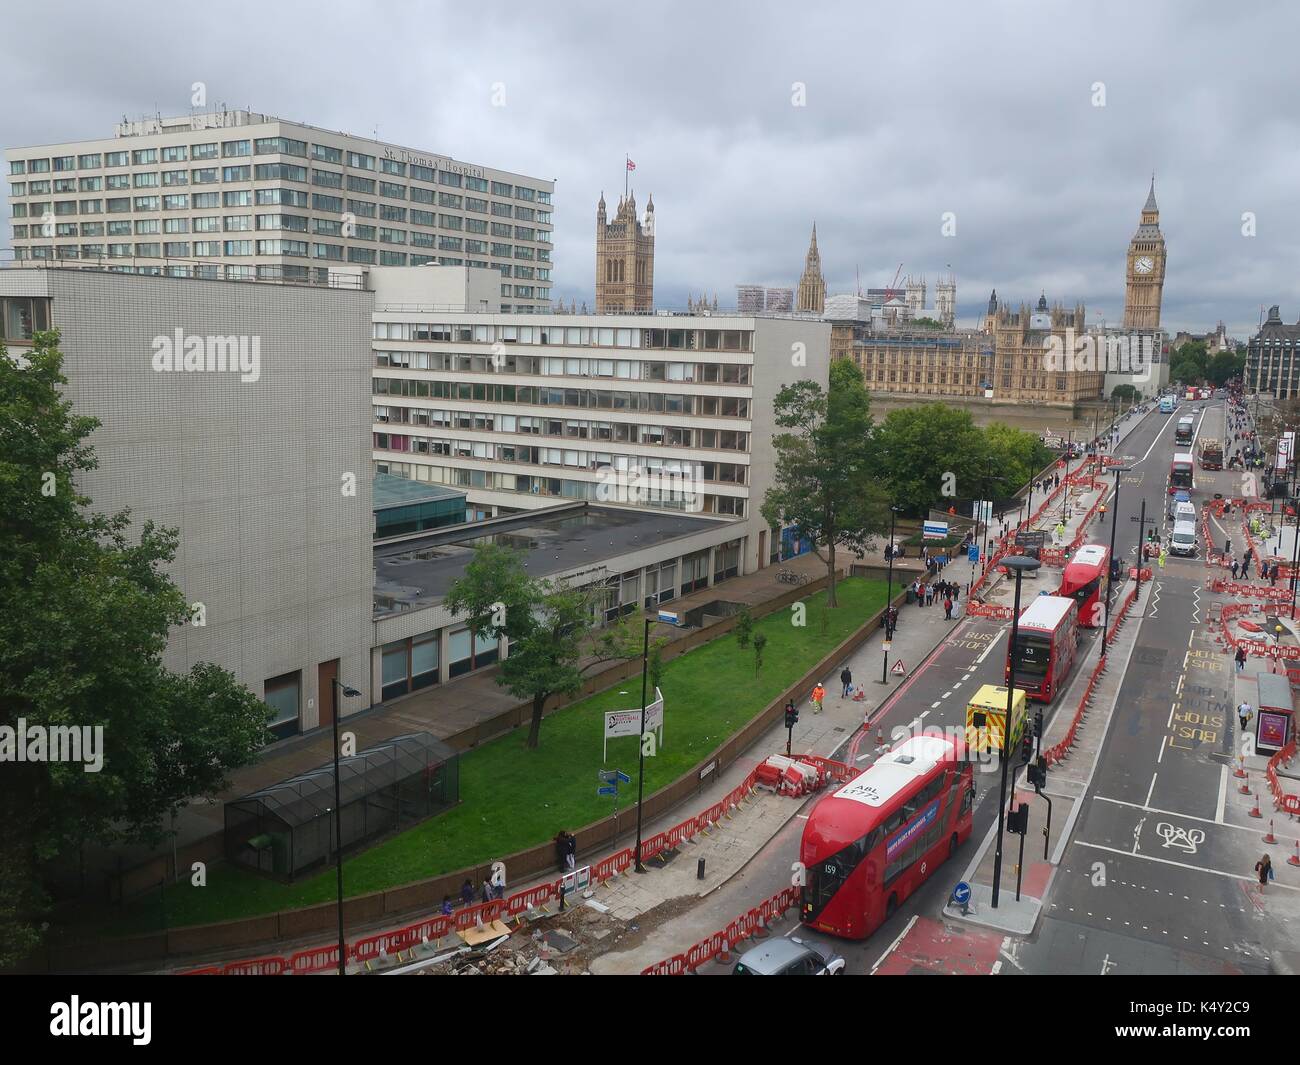 Vue sur le pont de Westminster, Big Ben et l'Hôpital St Thomas prises à partir du sixième étage de l'hôtel Park Plaza. Londres, Royaume-Uni. Banque D'Images